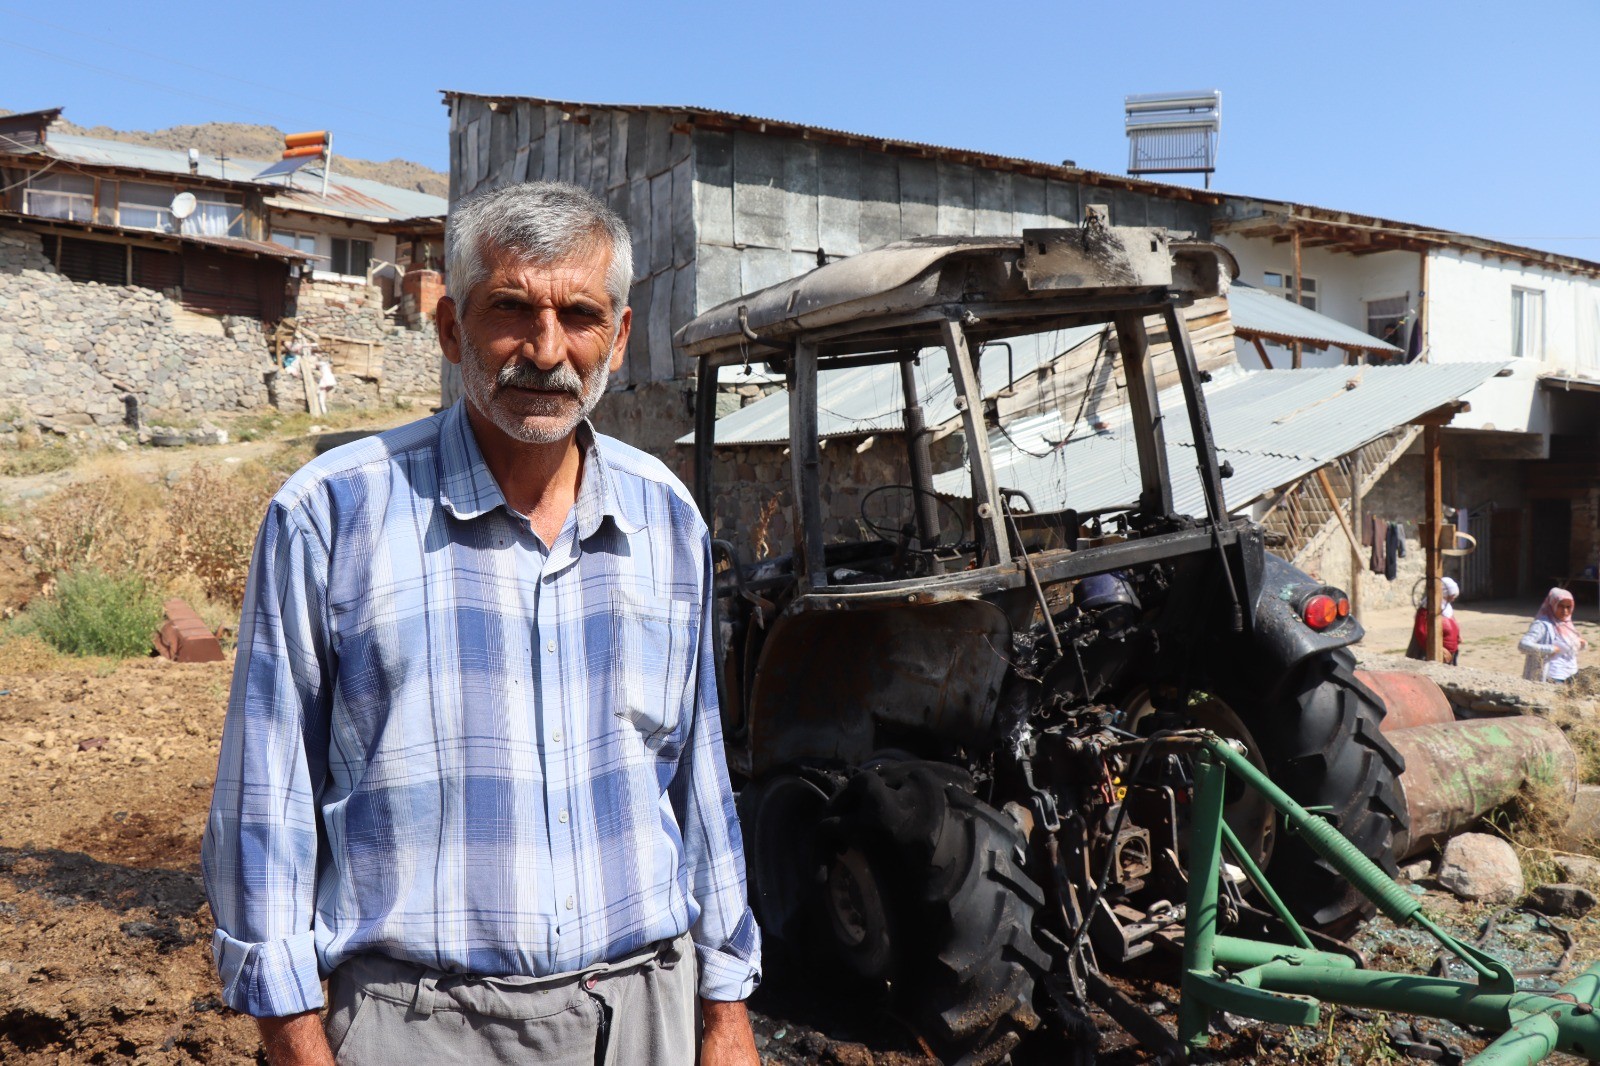 Erzurum’un Oltu ilçesinde kimliği belirsiz kişiler bir çiftçinin evinin önünden traktör ve 850 balya otunu yaktılar